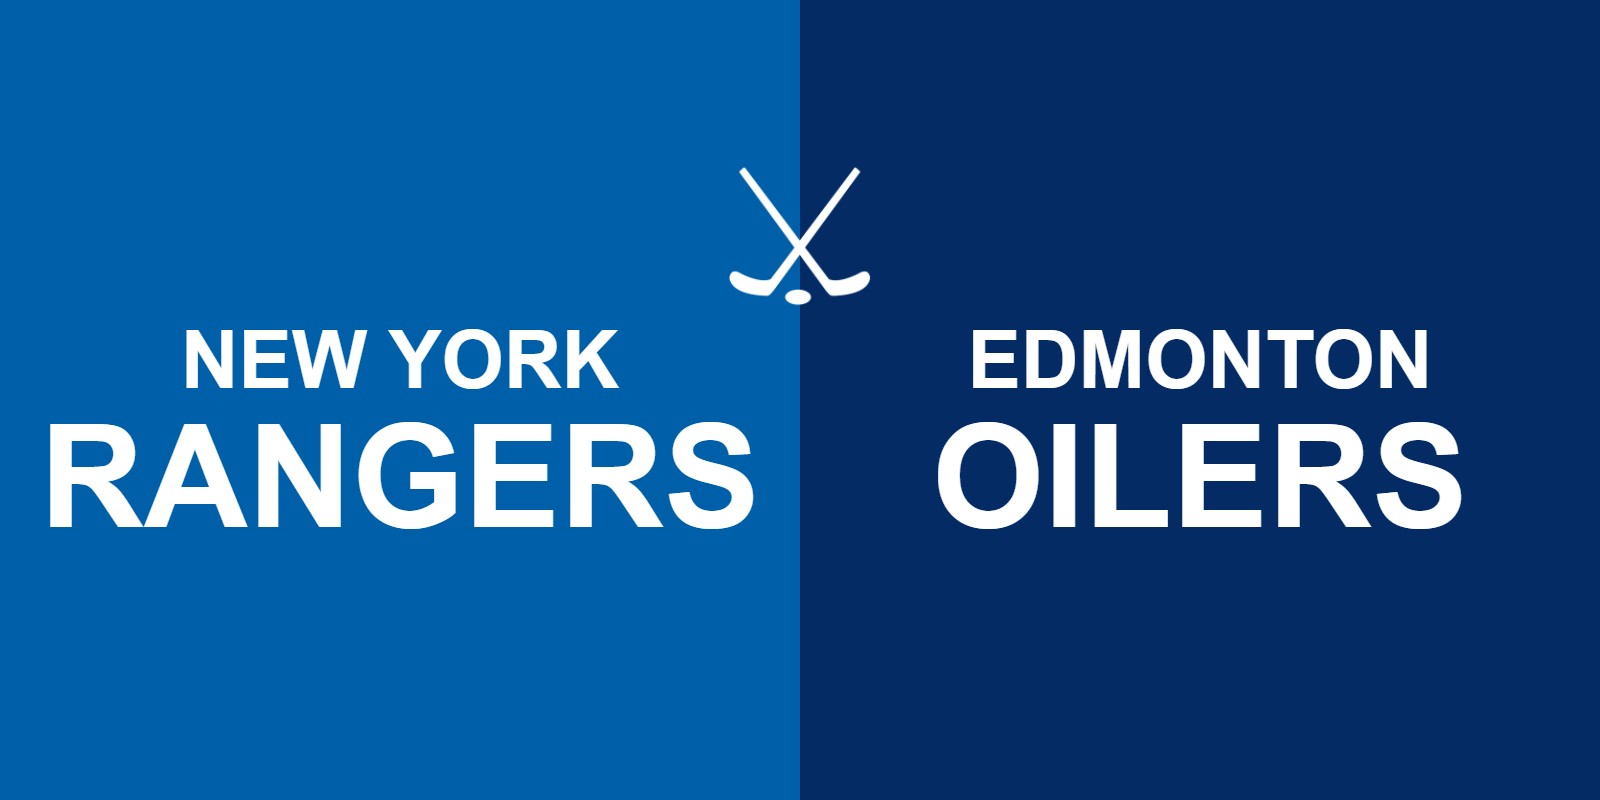 Rangers vs Oilers